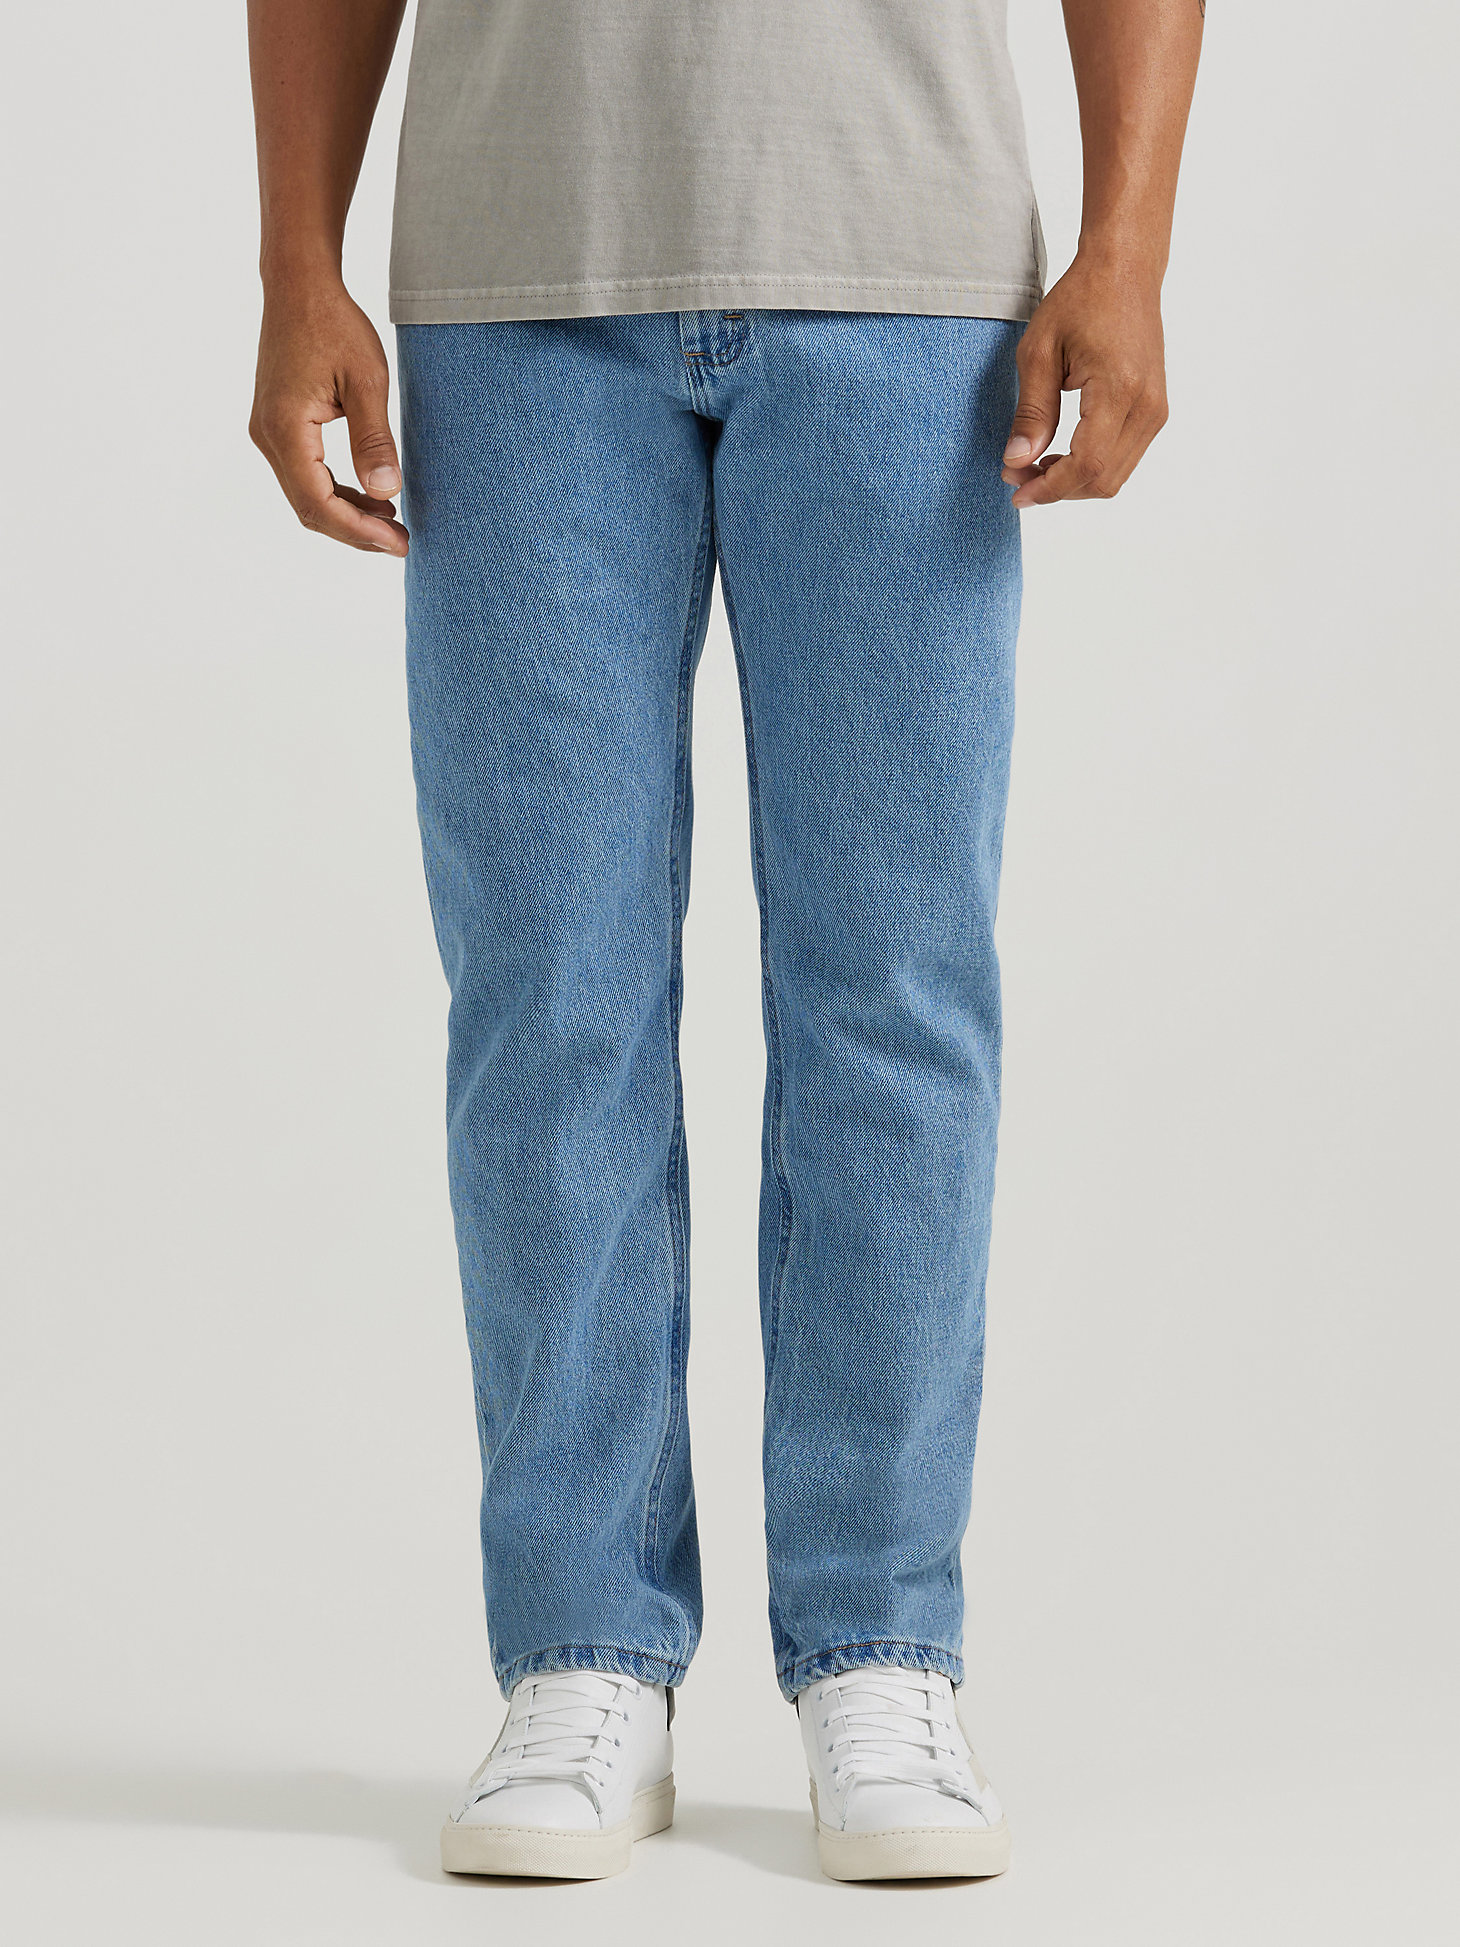 Arriba 35+ imagen men’s wrangler regular fit jeans